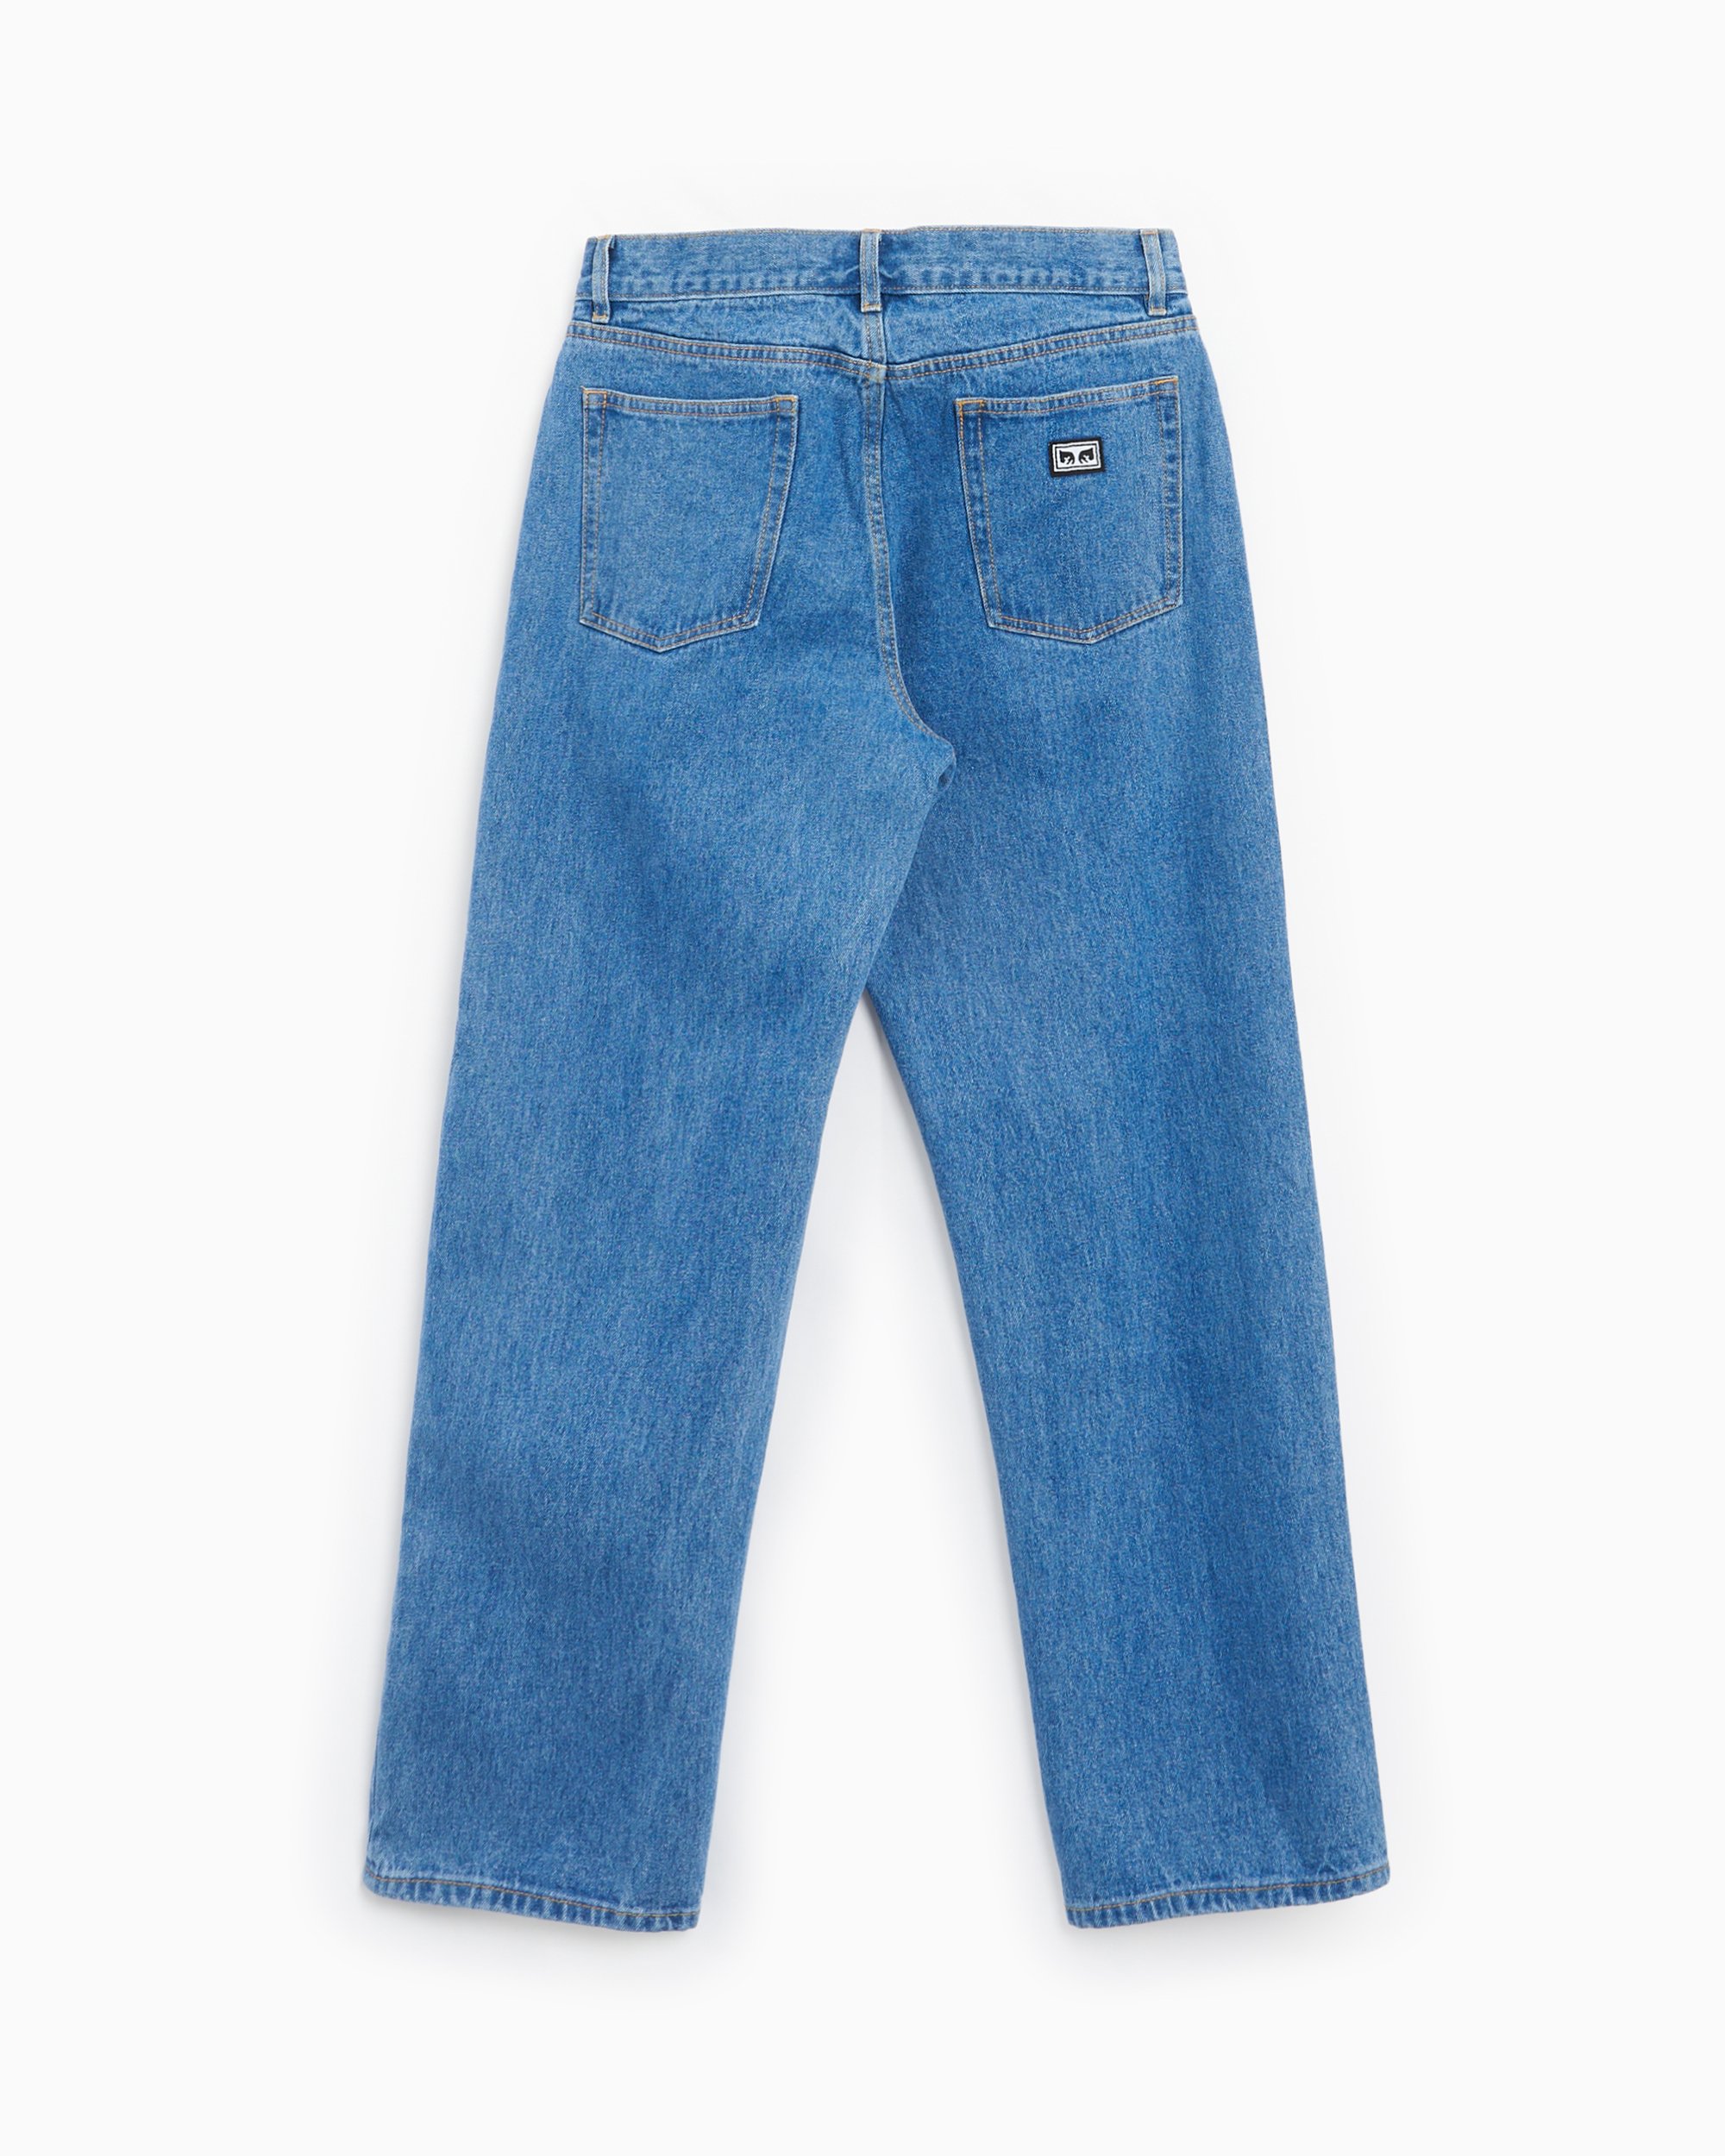 OBEY Clothing Hardwork Men's Denim Pants Blue 142010077-LIN 